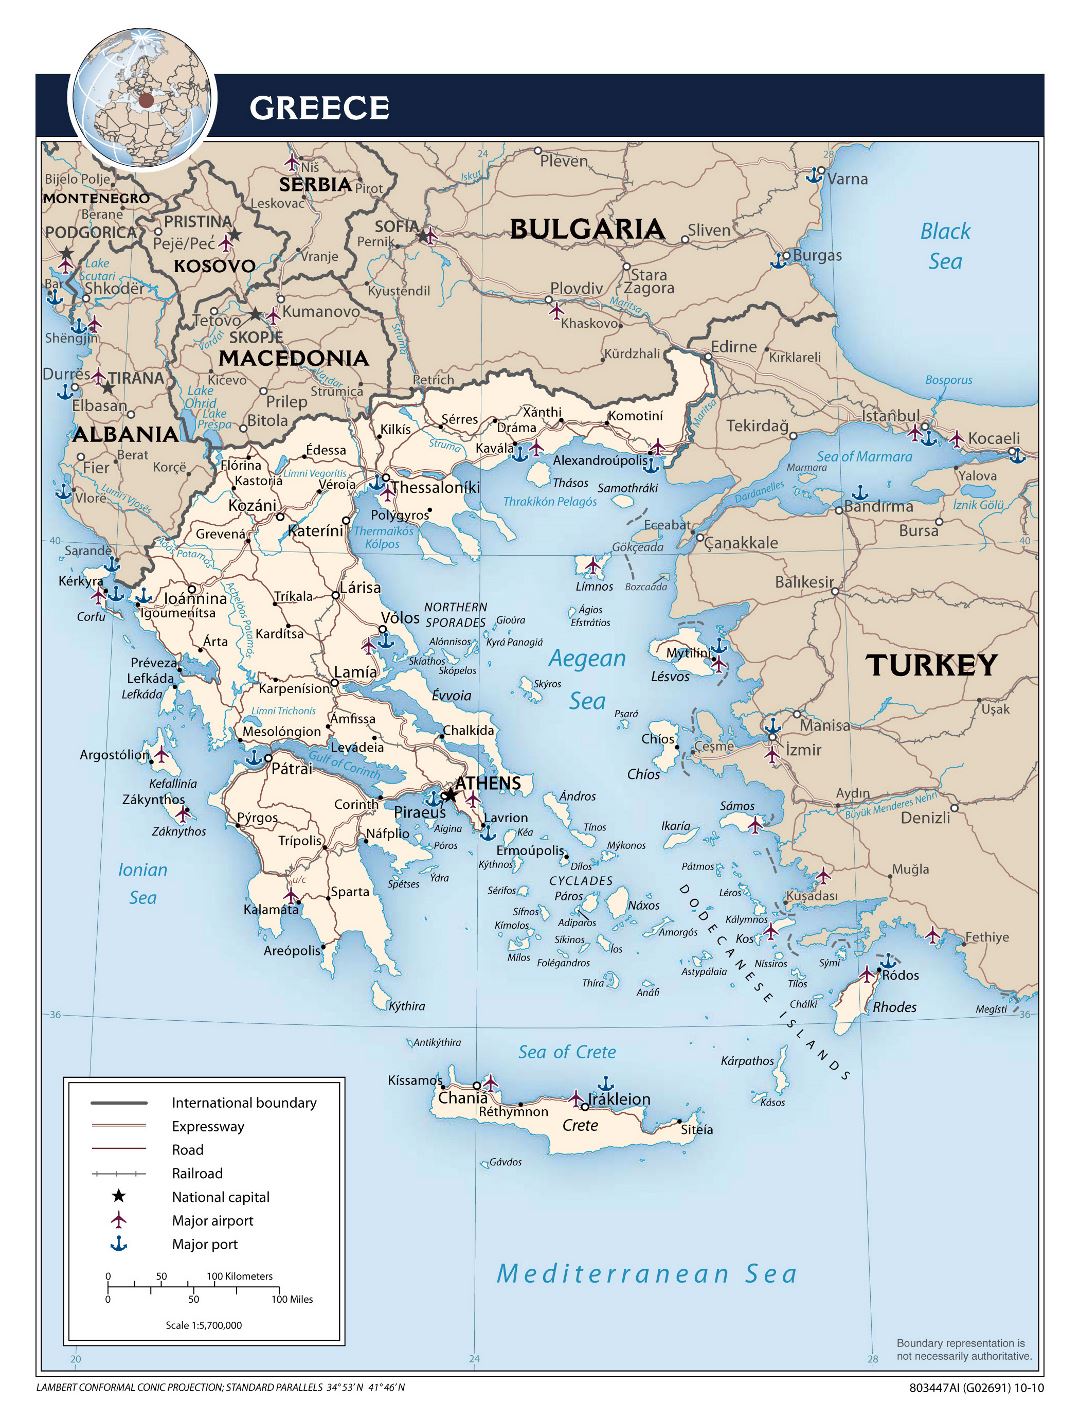 Крупномасштабная политическая карта Греции с дорогами, крупными городами, аэропортами и портами - 2010